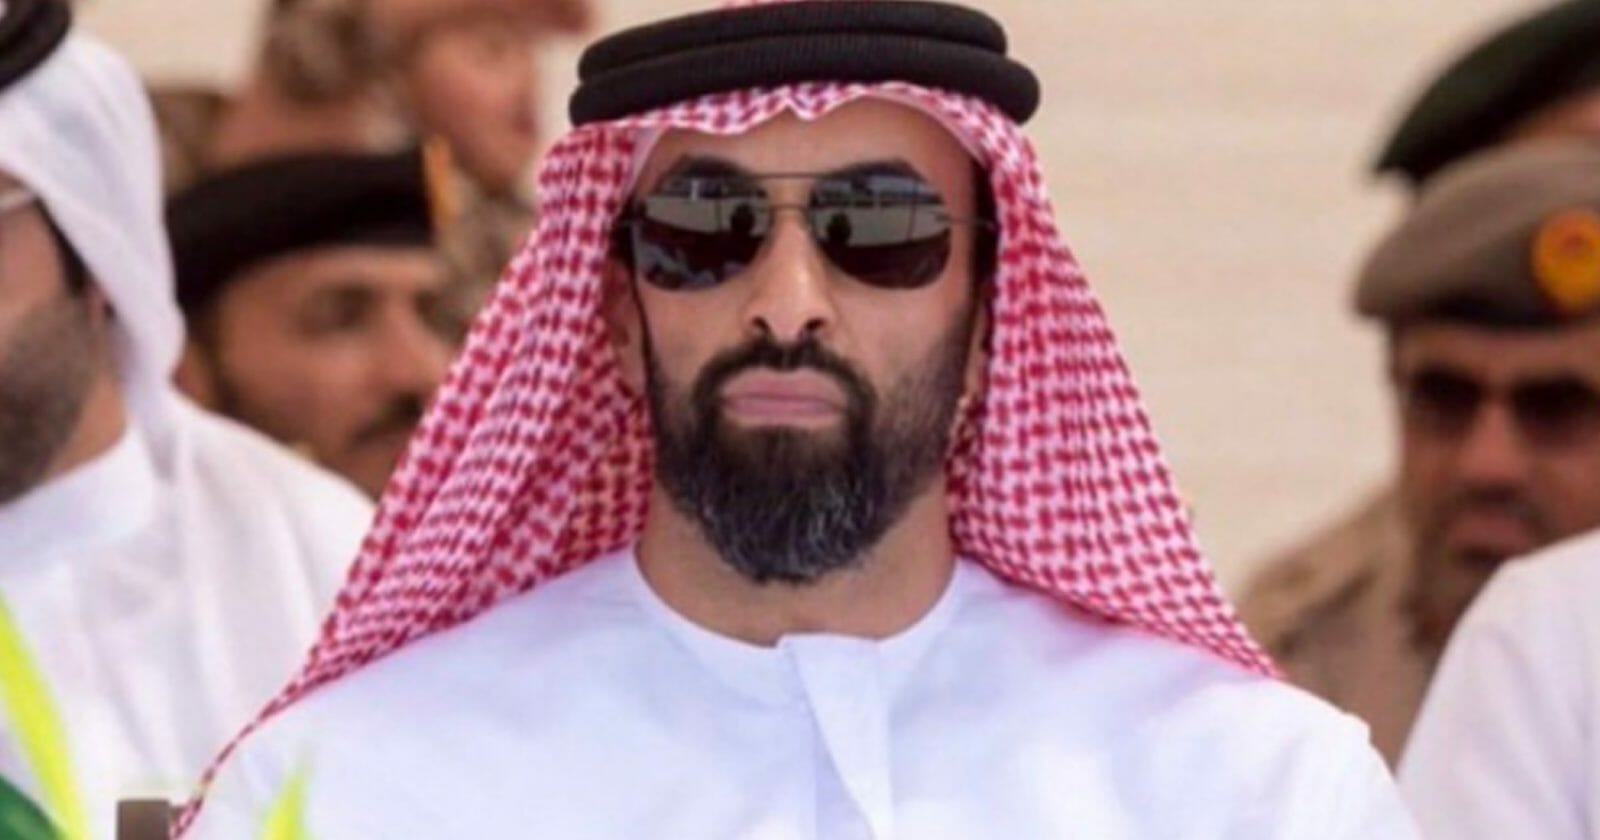 طحنون بن زايد “رجل التريليون ونصف دولار” الذي وضع يده على خزائن الإمارات